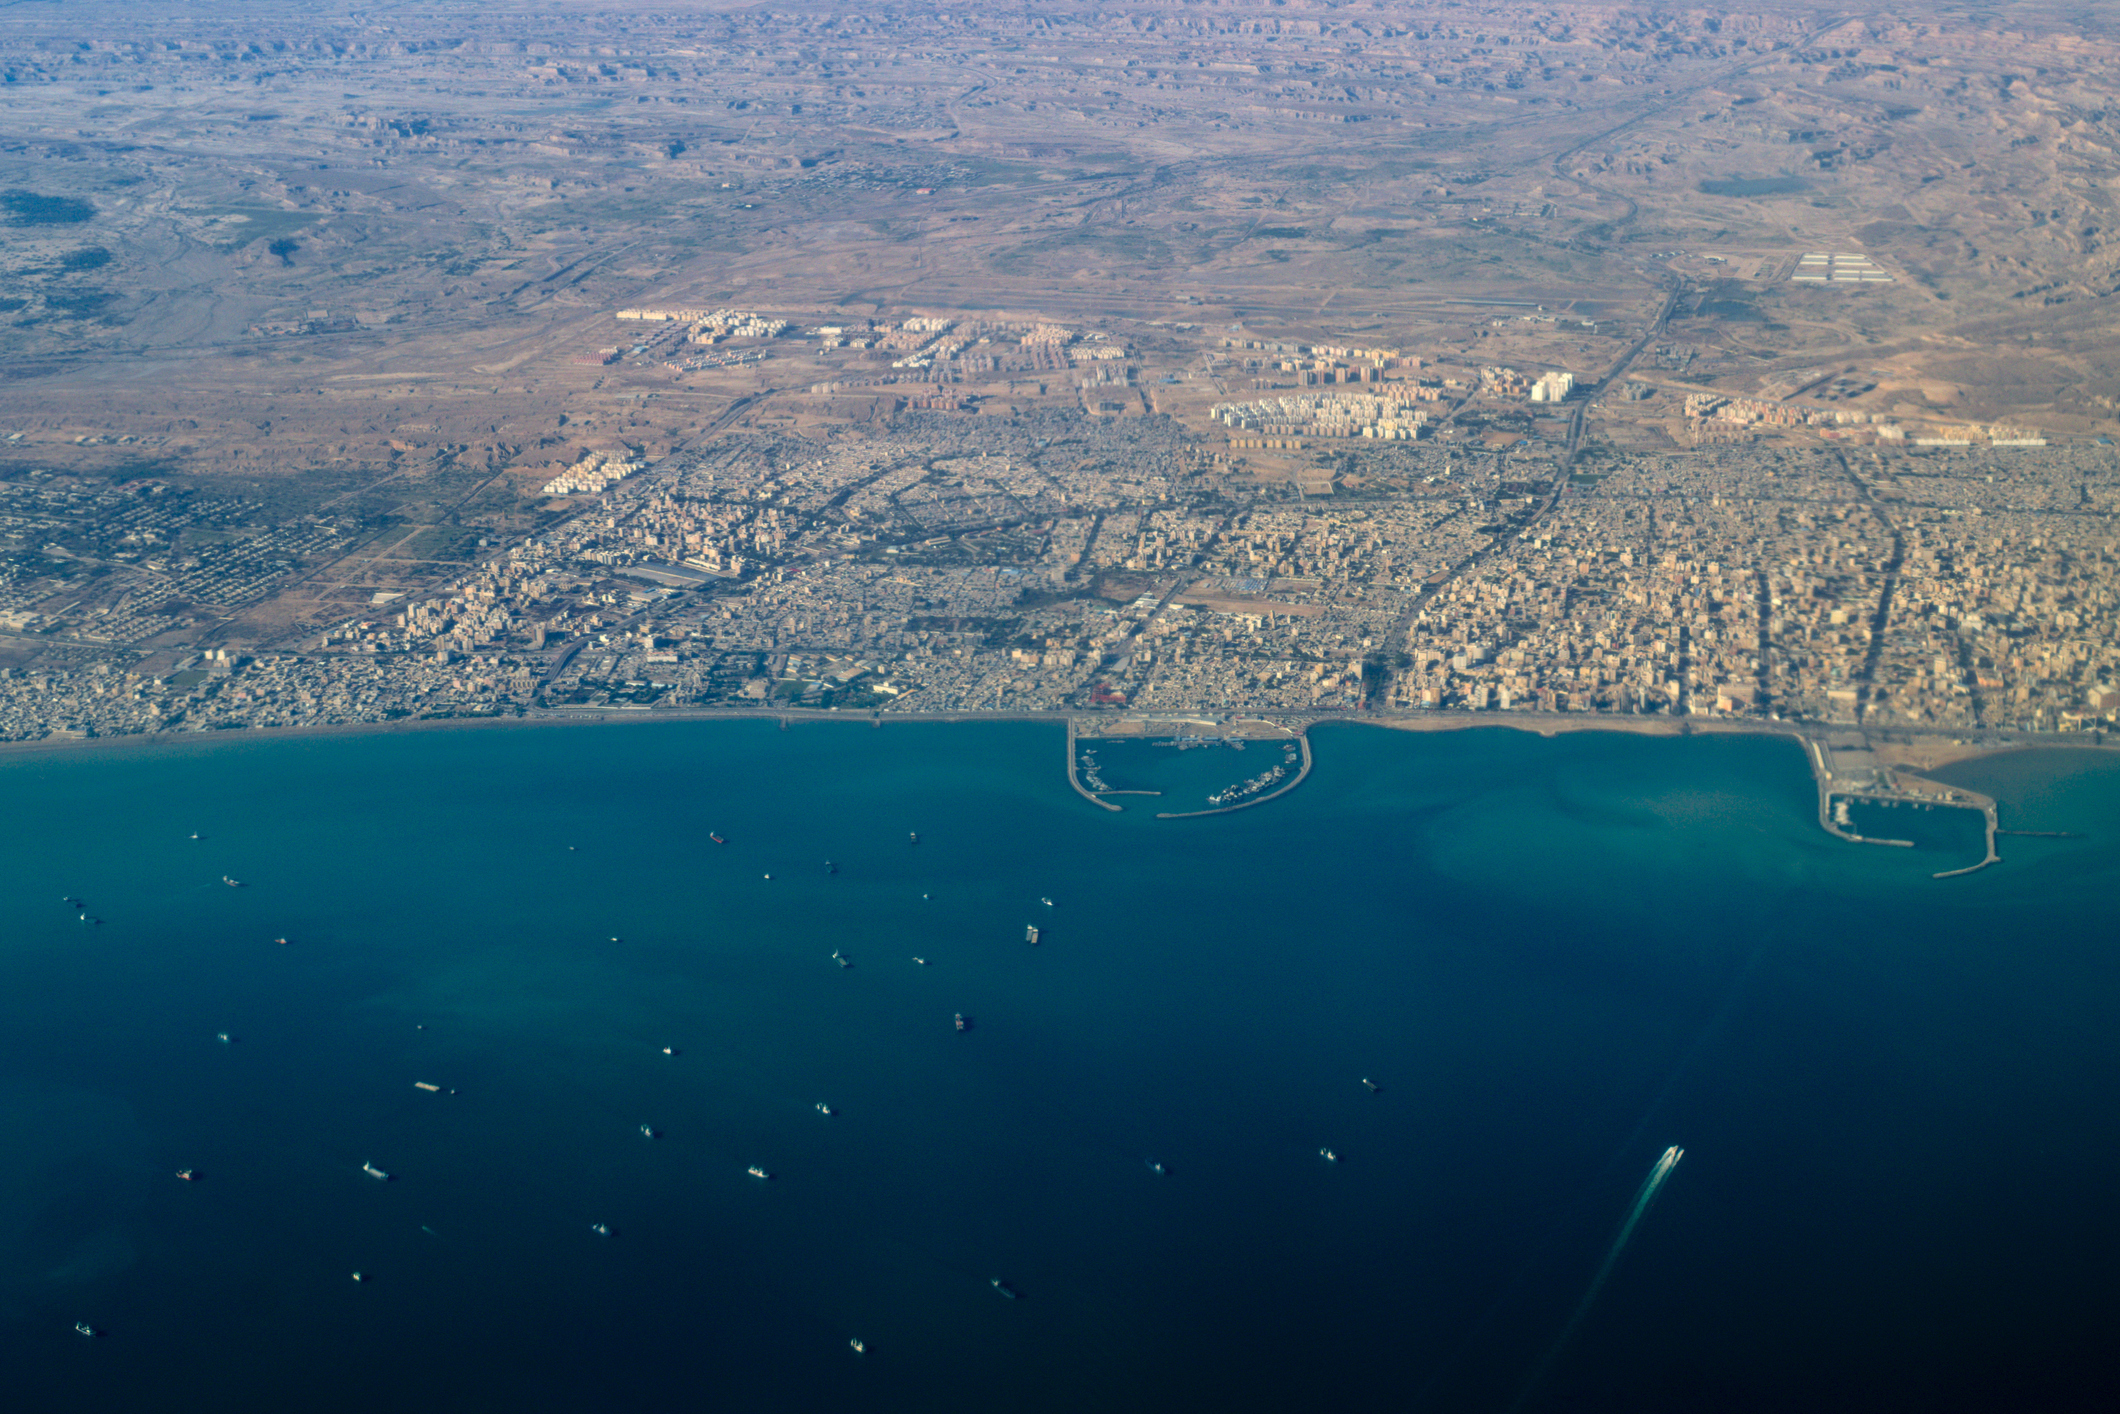 มุมมองทางอากาศของเมืองท่าใหญ่ของอิหร่าน Bandar Abbas ที่ตั้งอยู่บนอ่าวเปอร์เซีย มีท่าเรือหลายแห่งและการจราจรเรือ ช่องแคบฮอร์มุซ อิหร่าน